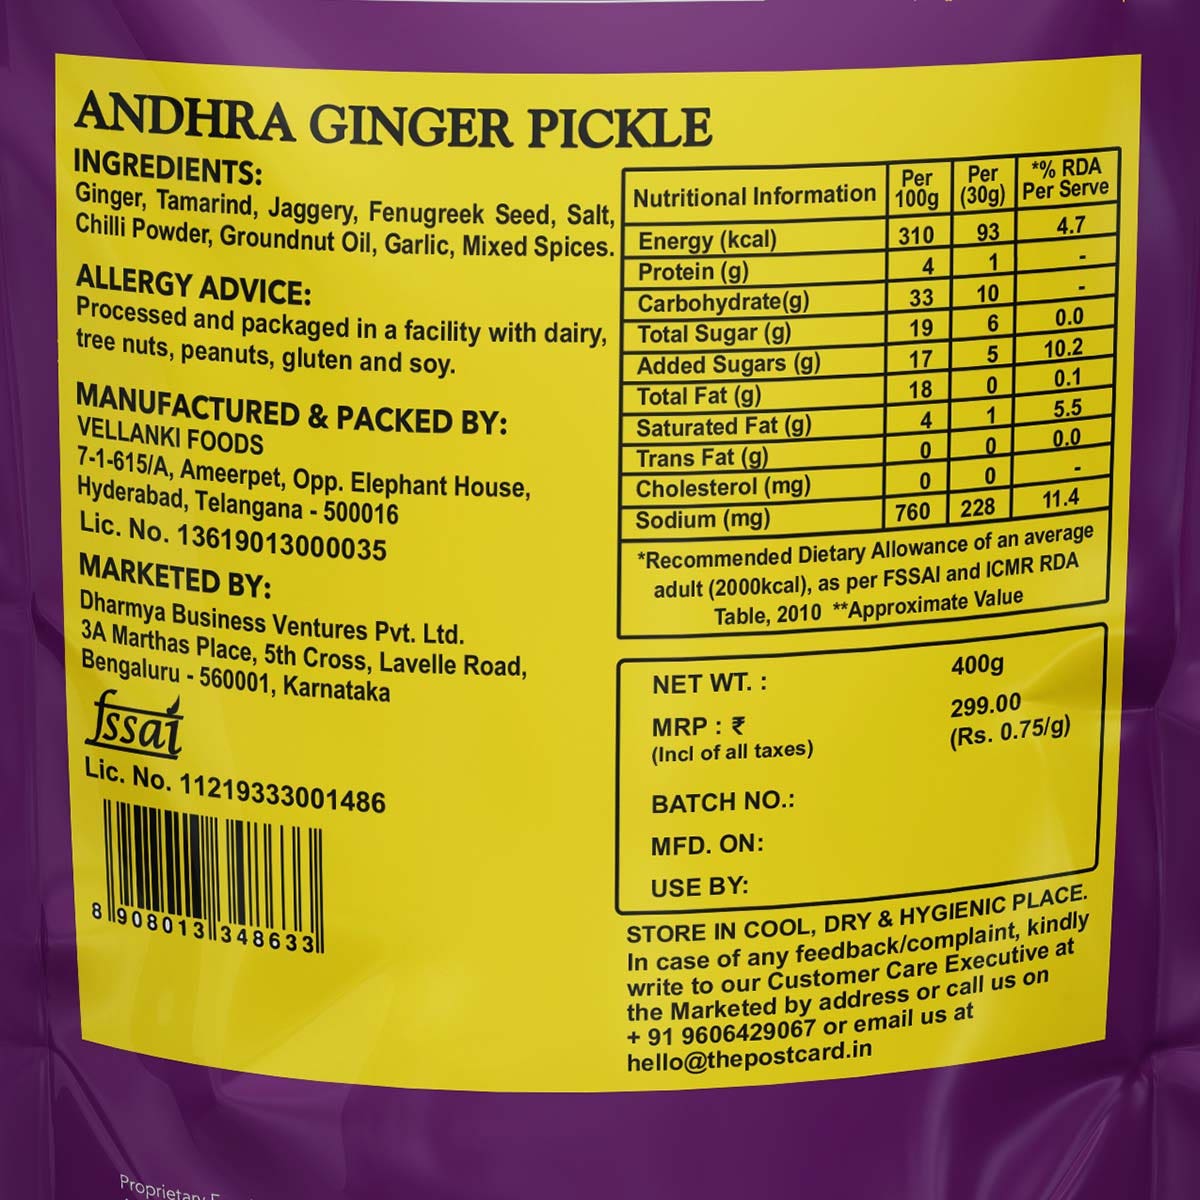 andhra ginger pickle